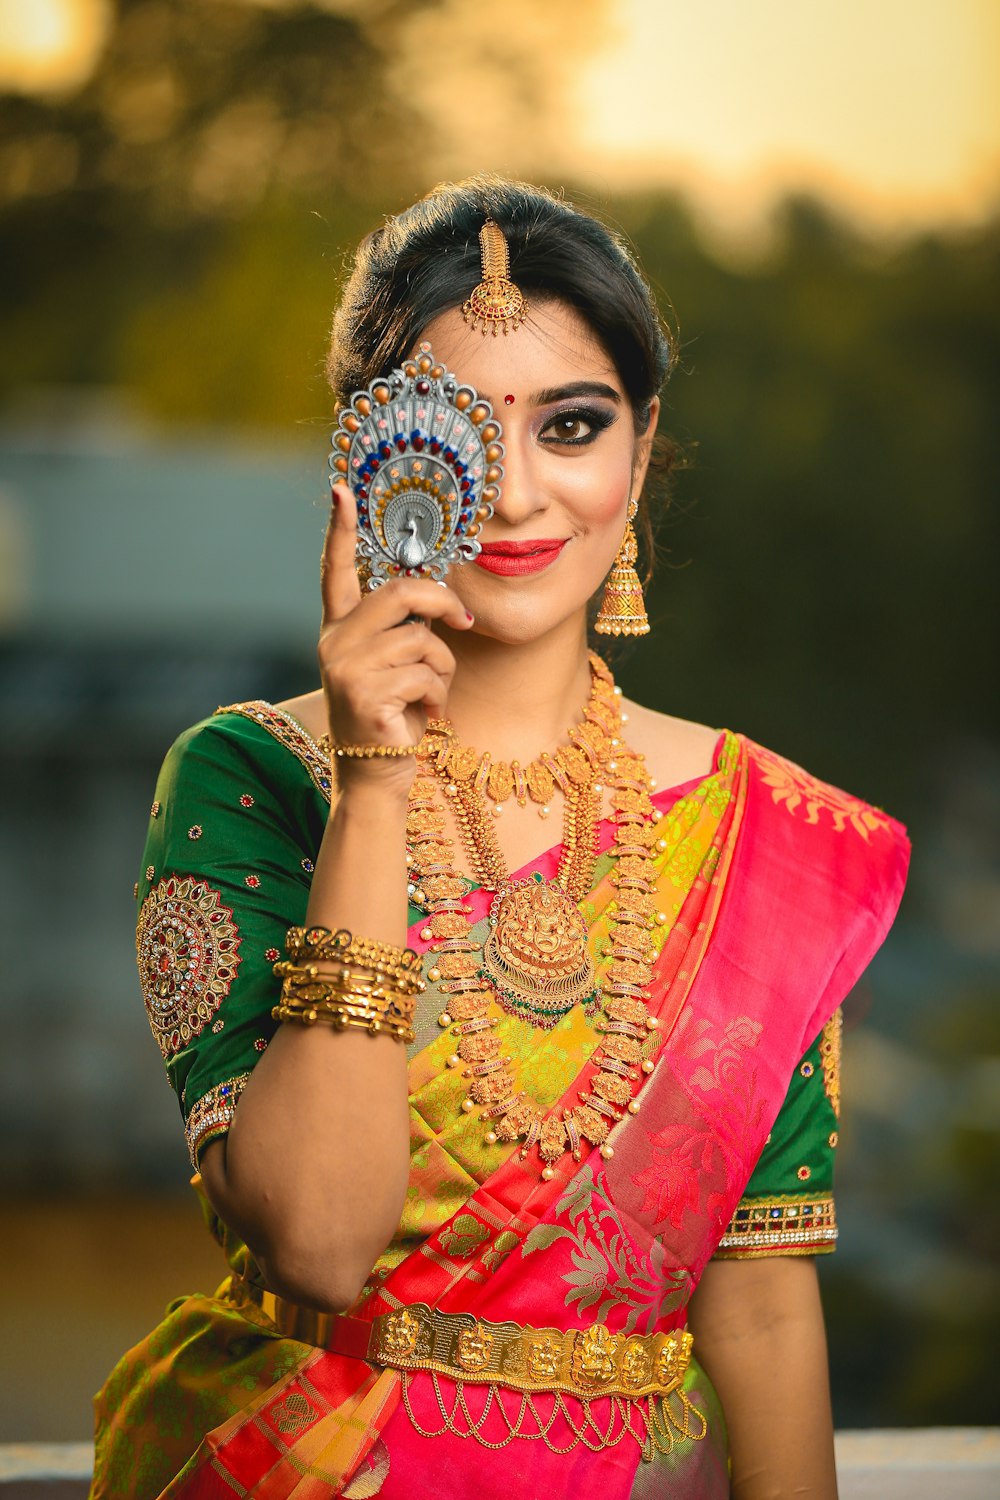 Mujer con vestido de sari verde, dorado y rojo que oculta su ojo derecho mientras sonríe